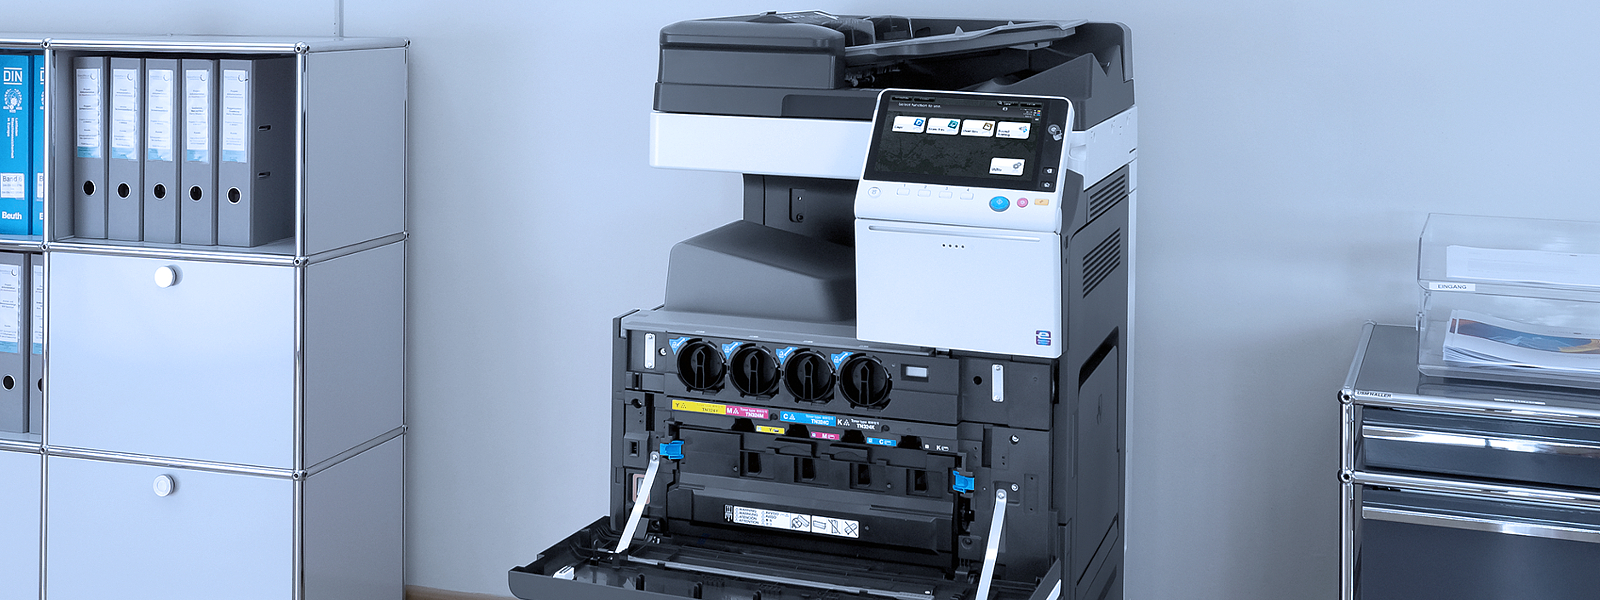 Tipuri de contracte de asistenta tehnica, suport si garantie pentru echipamente de imprimare prin Romsystem.ro